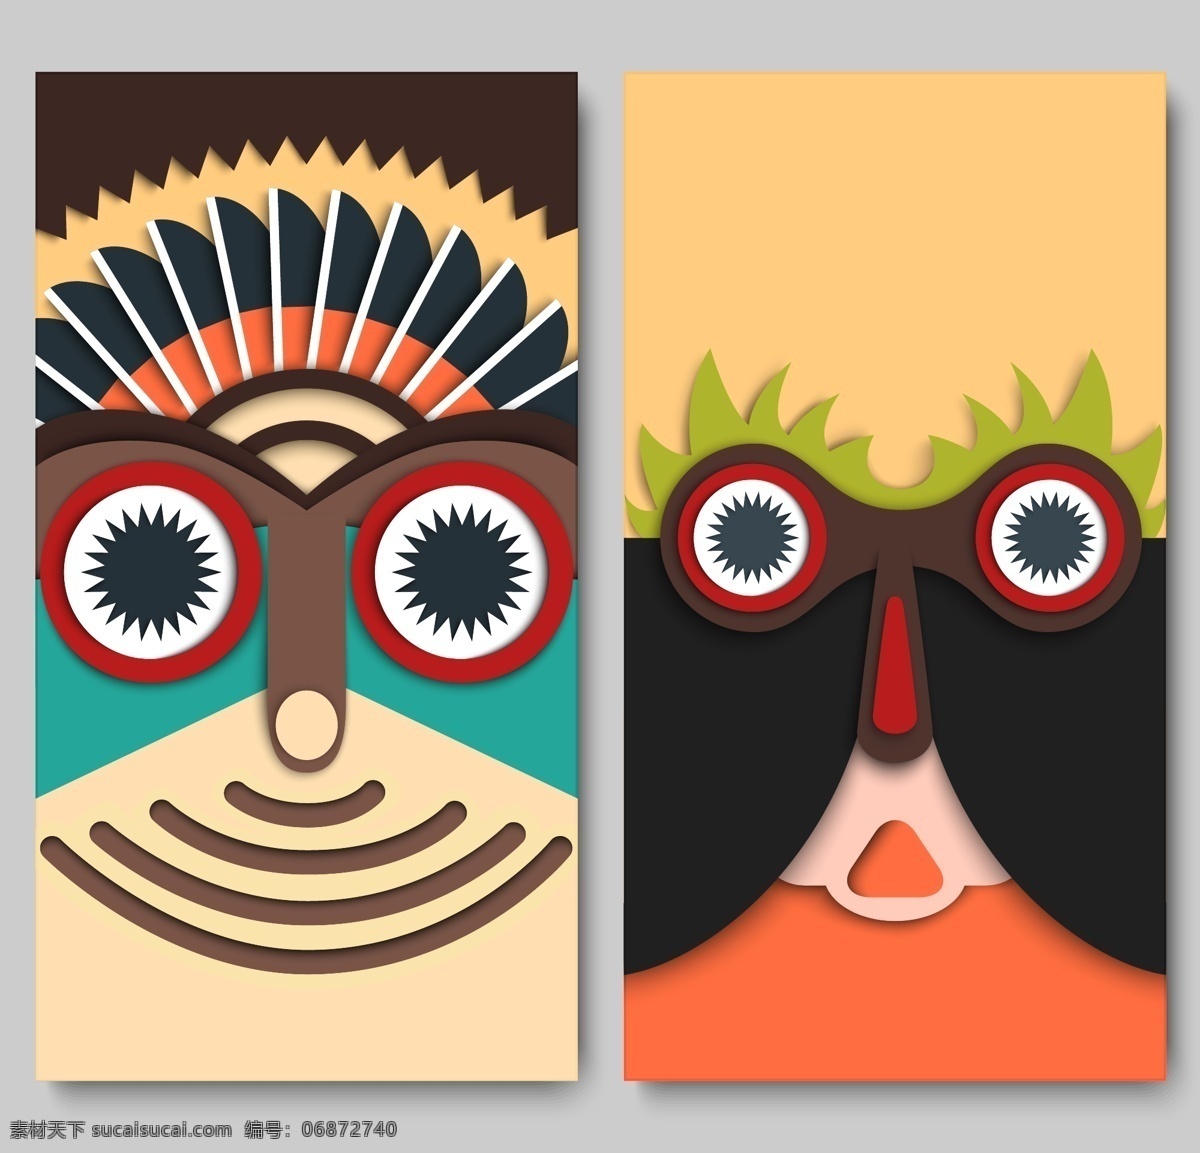 彩色 几何 卡通 人像 部落 头像 矢量 圆形 眼睛 矢量素材 设计素材 平面素材 印第安